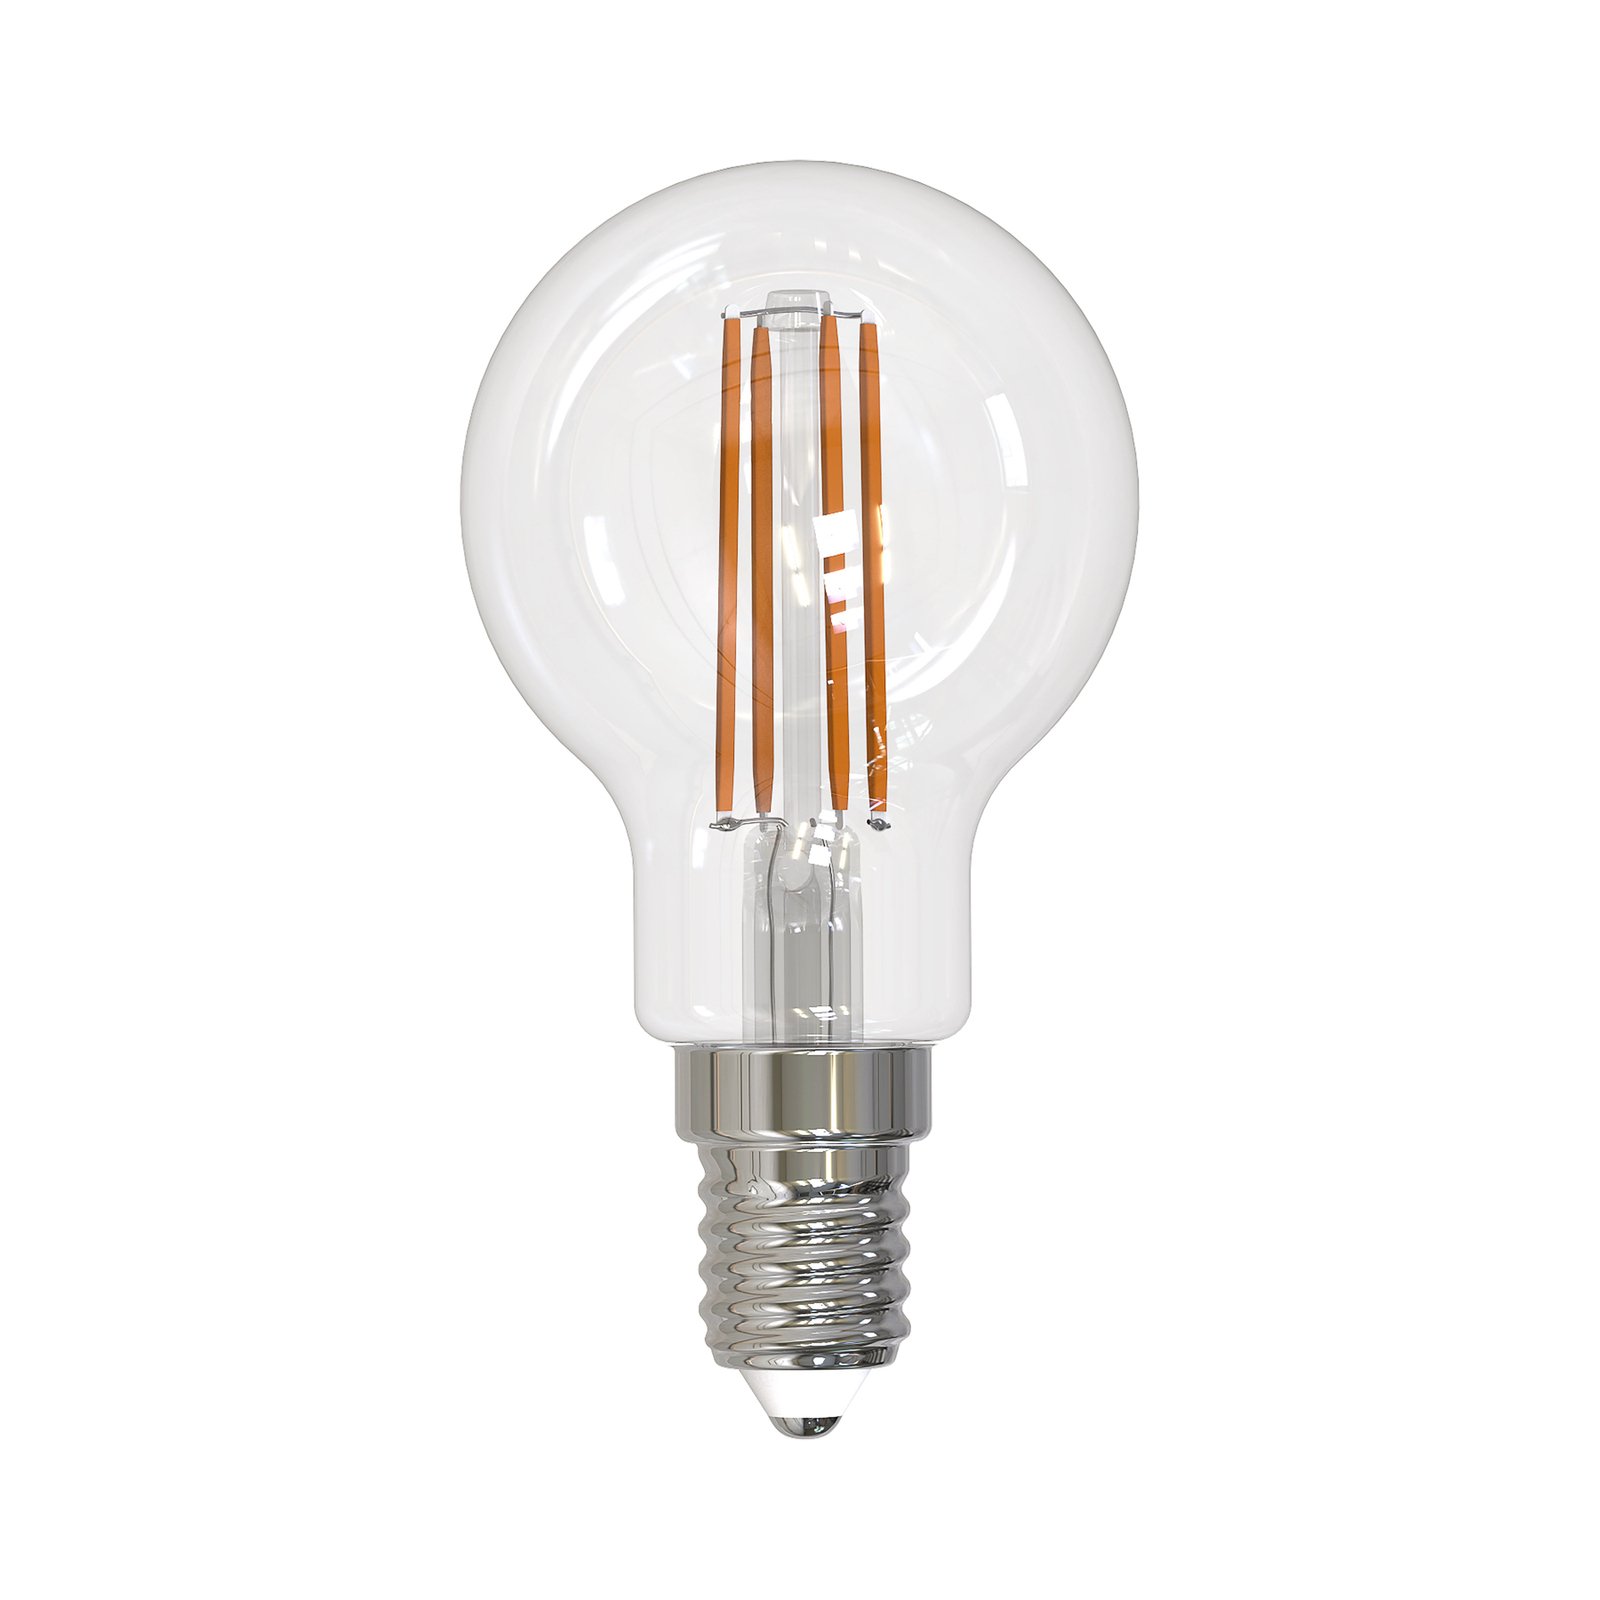 Arcchio ampoule LED à filament E14 G45, set de 2, 2700 K